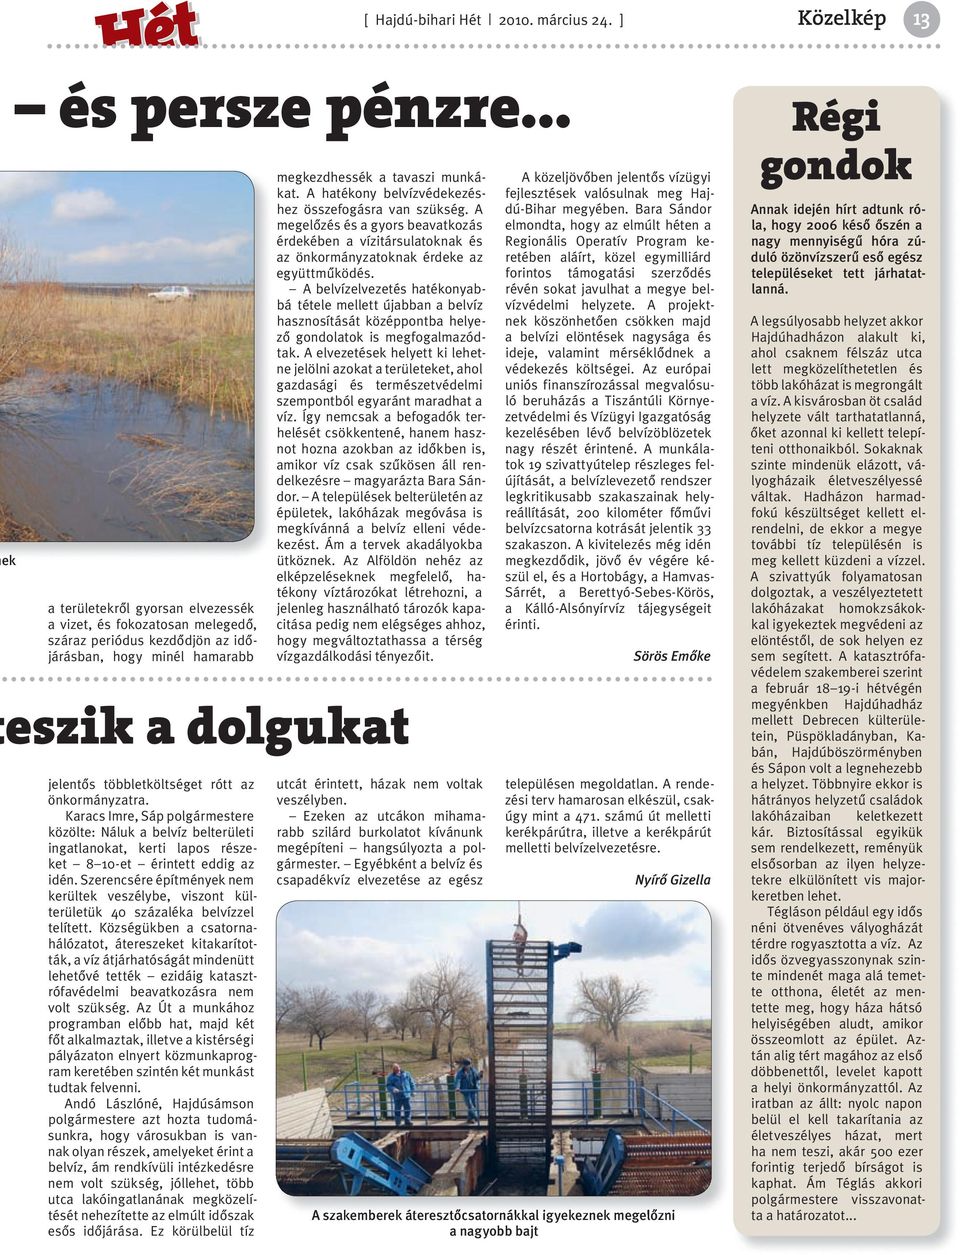 Karacs Imre, Sáp polgármestere közölte: Náluk a belvíz belterületi ingatlanokat, kerti lapos részeket 8 10-et érintett eddig az idén.